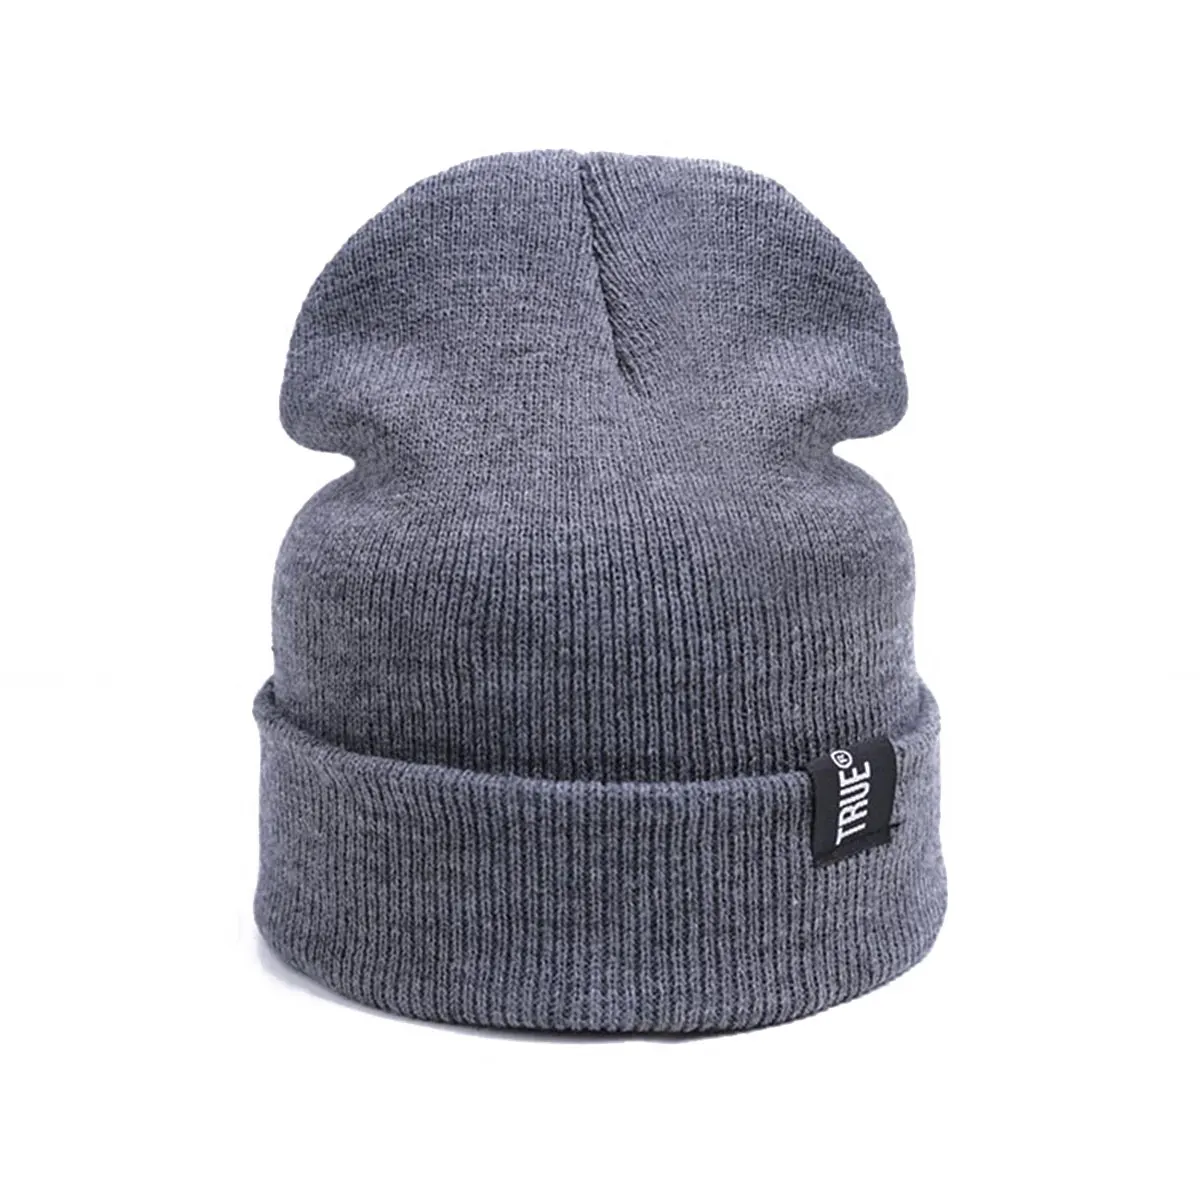 Новые зимние шапки для мужчин и женщин, вязаная шапка для женщин, одноцветная хлопковая шапка для мужчин Skullies Beanies унисекс, эластичная вязаная шапка - Цвет: grey